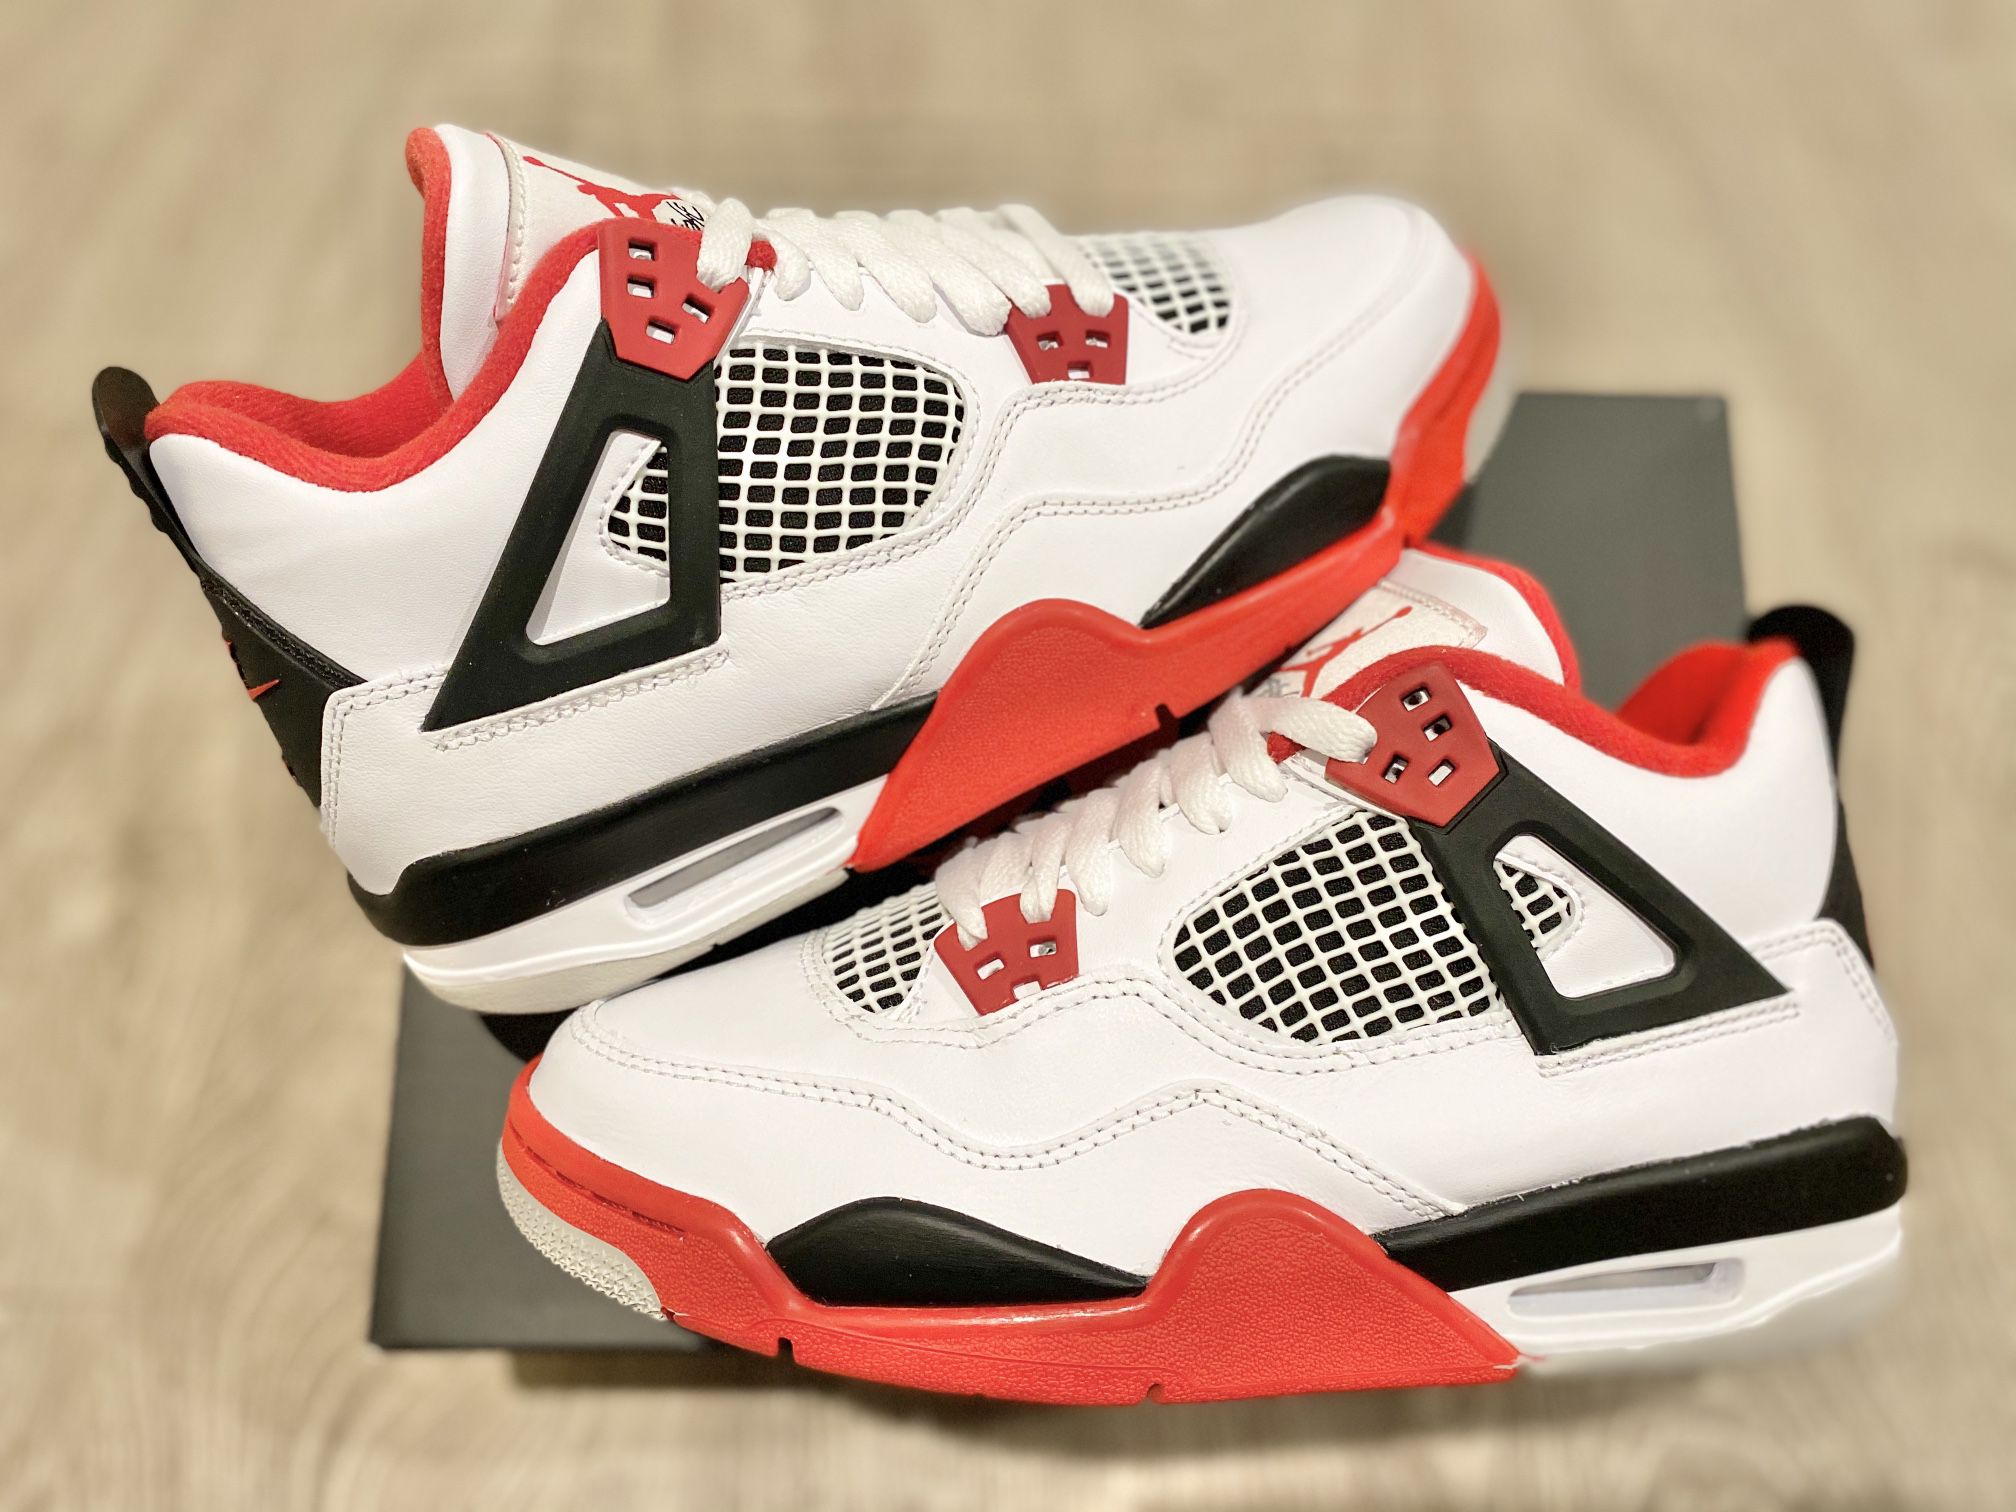 Jordan 4 Fire Red Size 6.5 & 7 Y GS